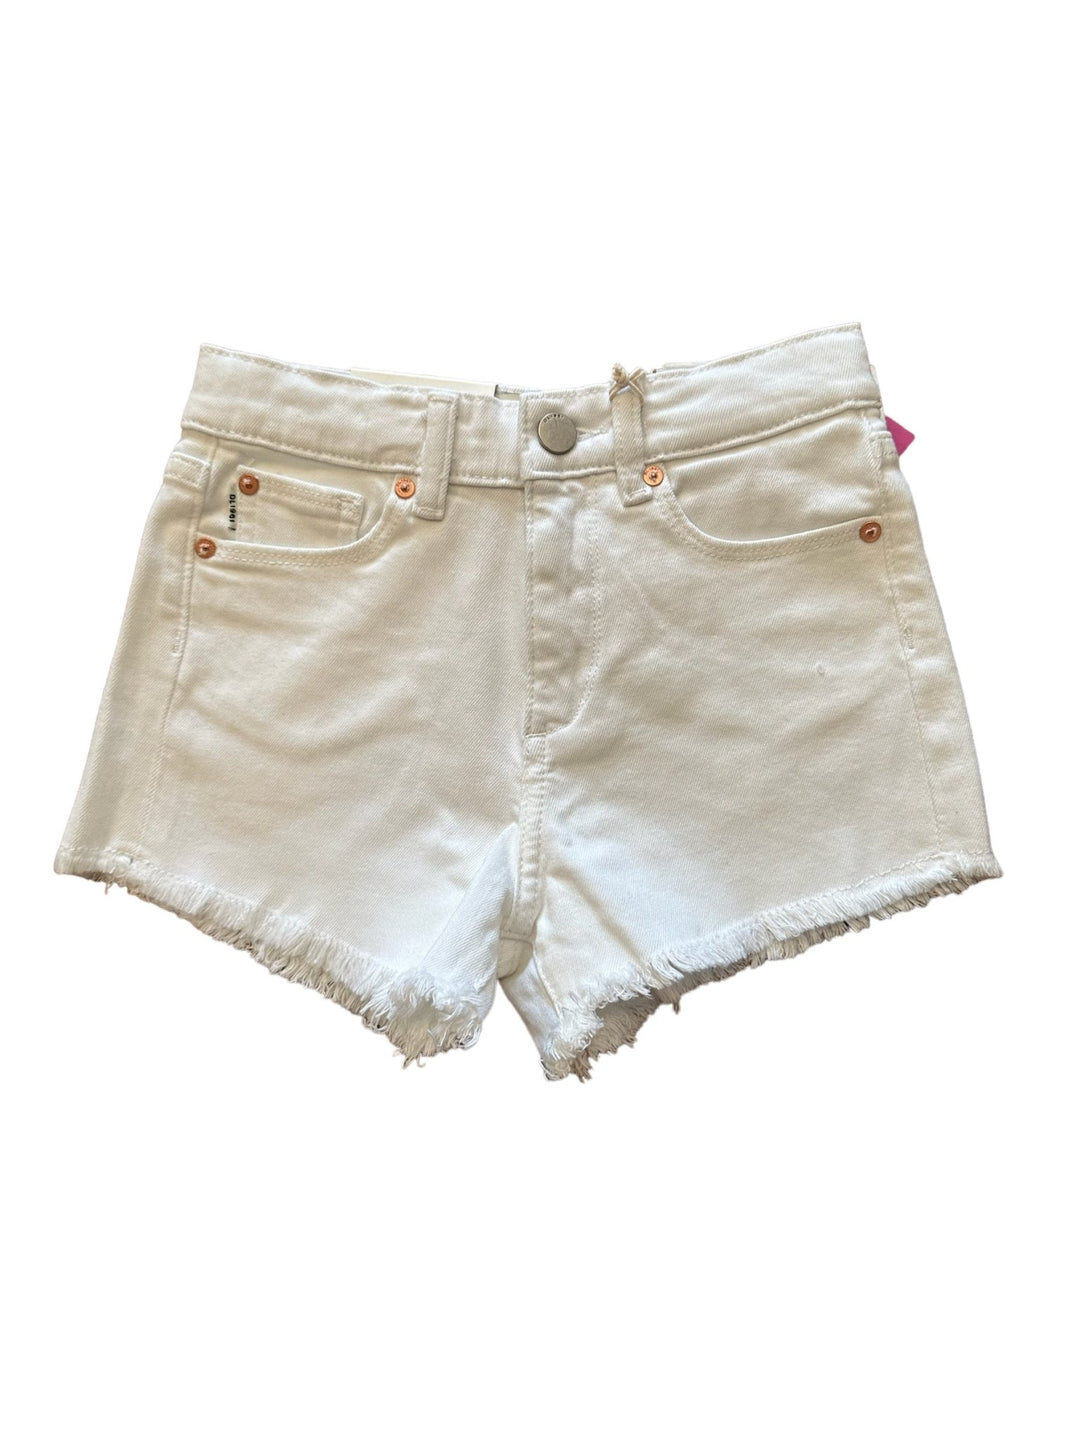 DL1961 Lucy White Frayed Denim Shorts - jernijacks